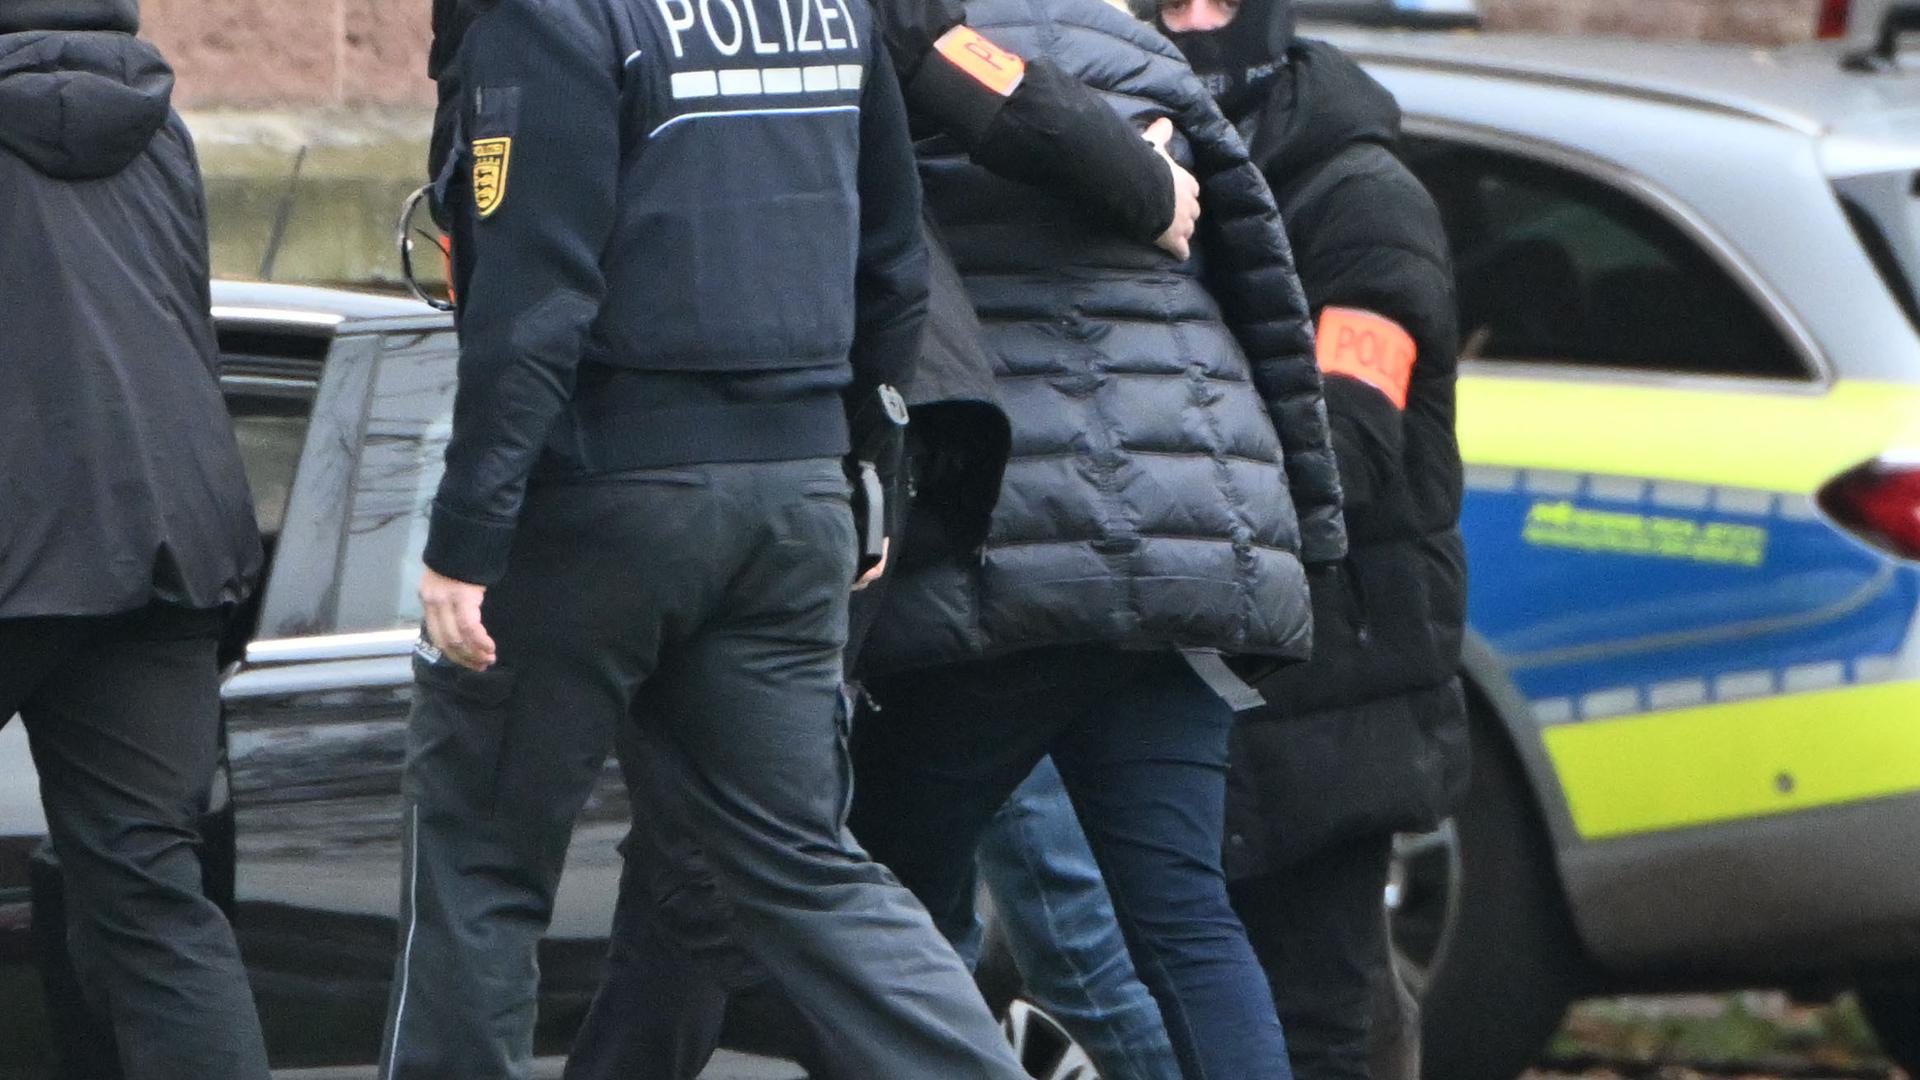 Eine Person (2.v.r.) wird von Polizisten aus einem Hubschrauber gebracht. Die Bundesanwaltschaft hat am Mittwochmorgen mehrere Menschen aus der sogenannten "Reichsbürgerszene" im Zuge einer Razzia festnehmen lassen. Zahlreiche Beamte waren in mehreren Bundesländern im Einsatz, sagte eine Sprecherin der Karlsruher Behörde. Beim Bundesgerichtshof in Karlsruhe sollen die Haftprüfungen stattfinden. +++ dpa-Bildfunk +++